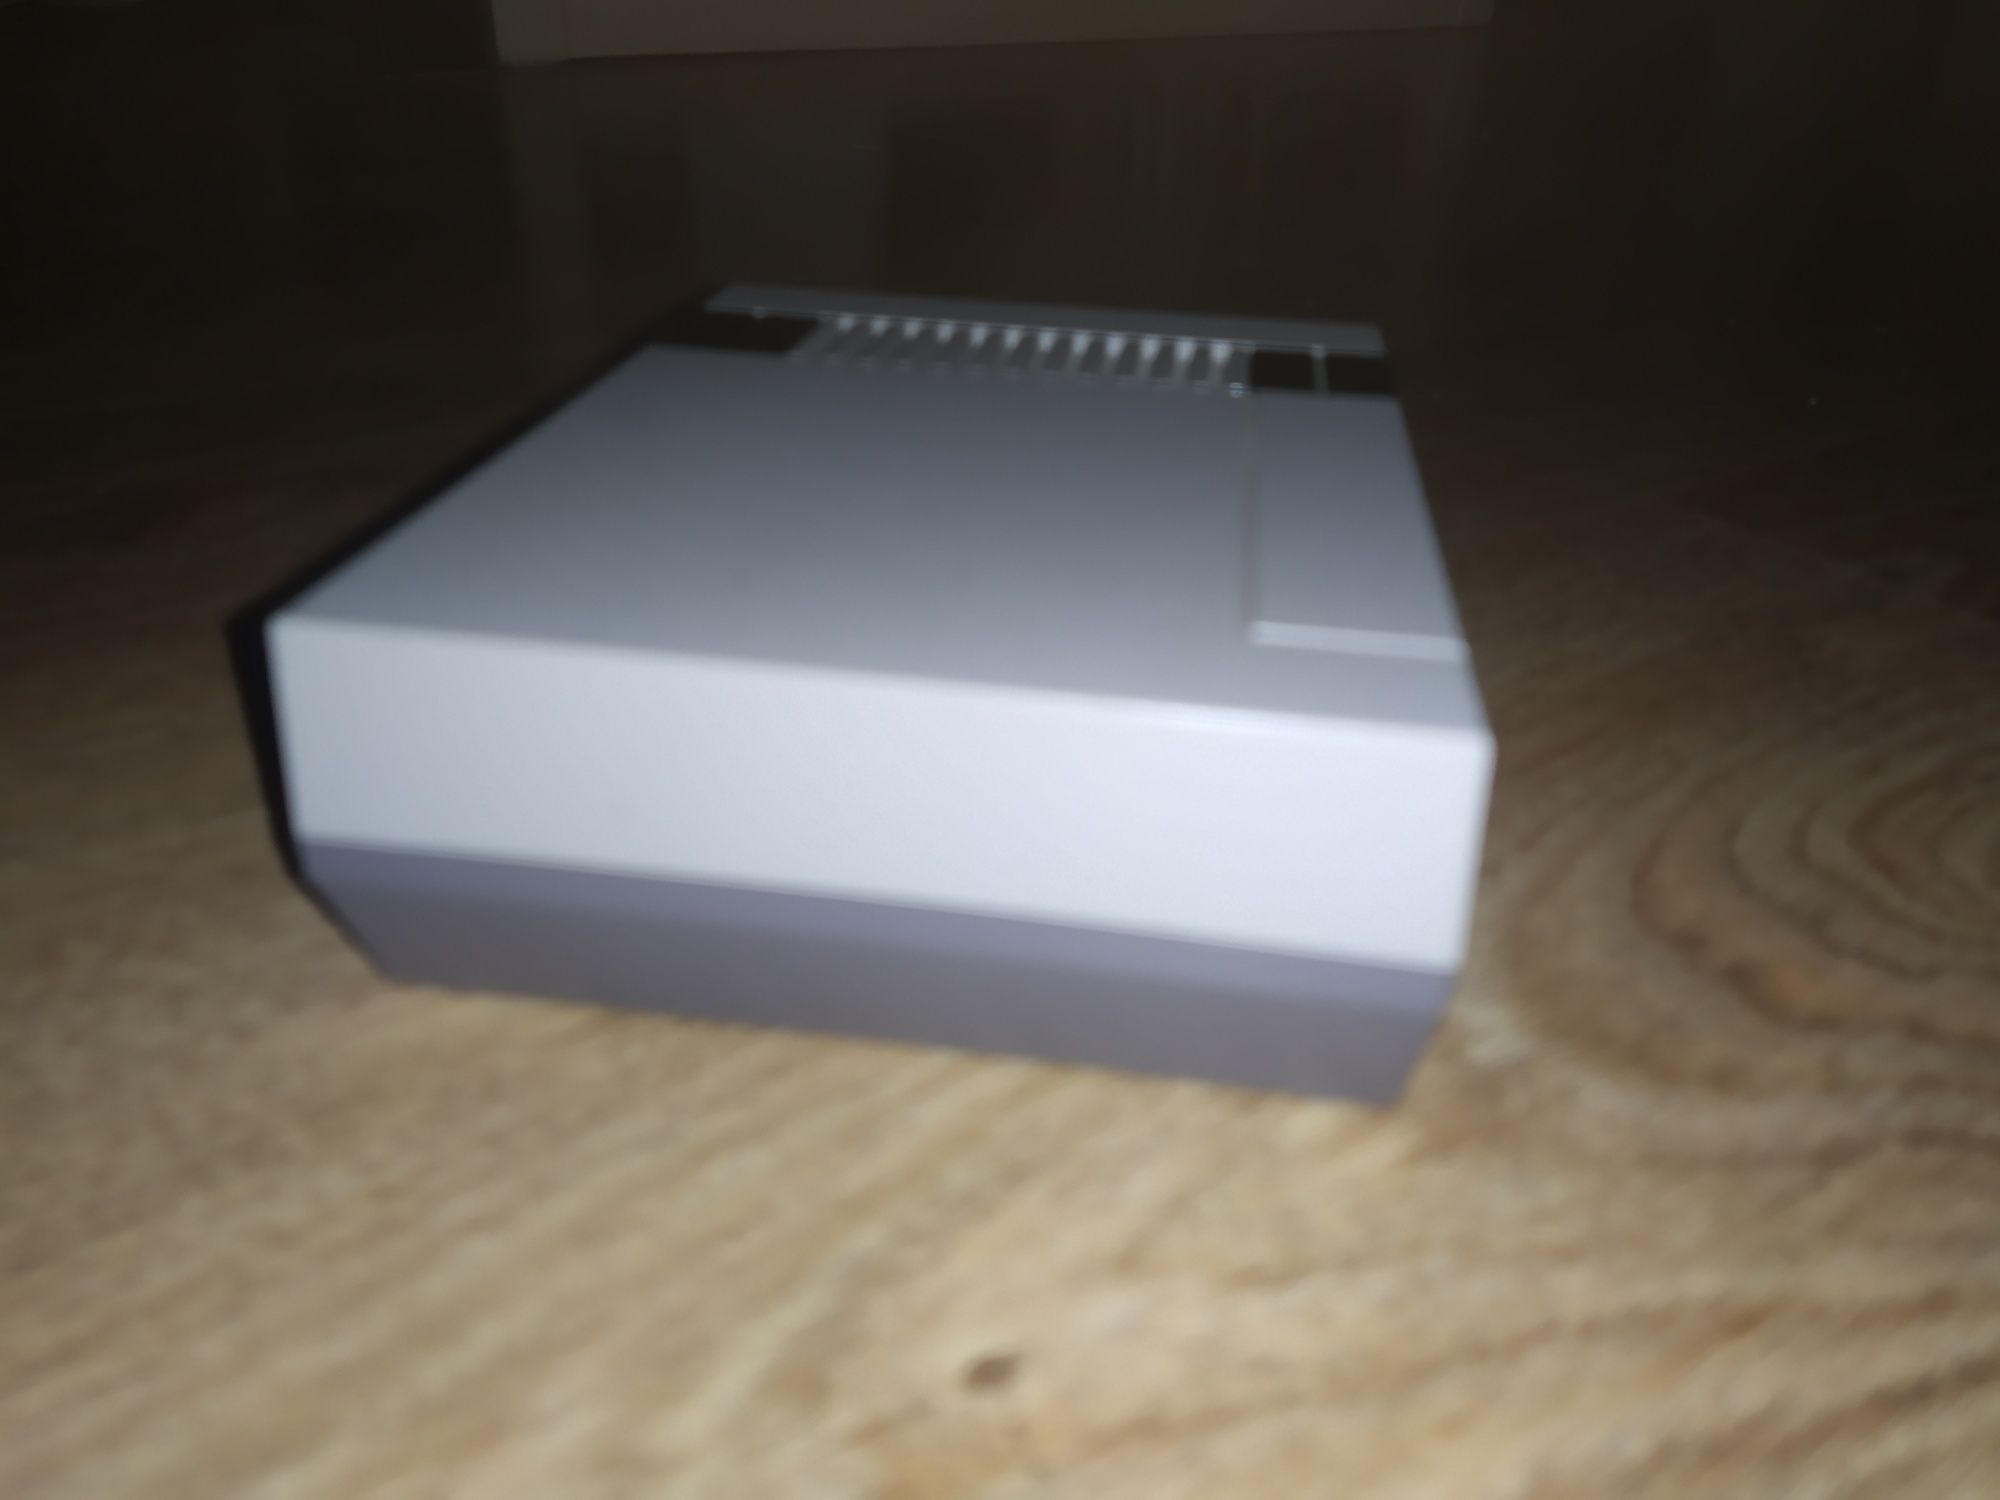 Nintendo NES Mini